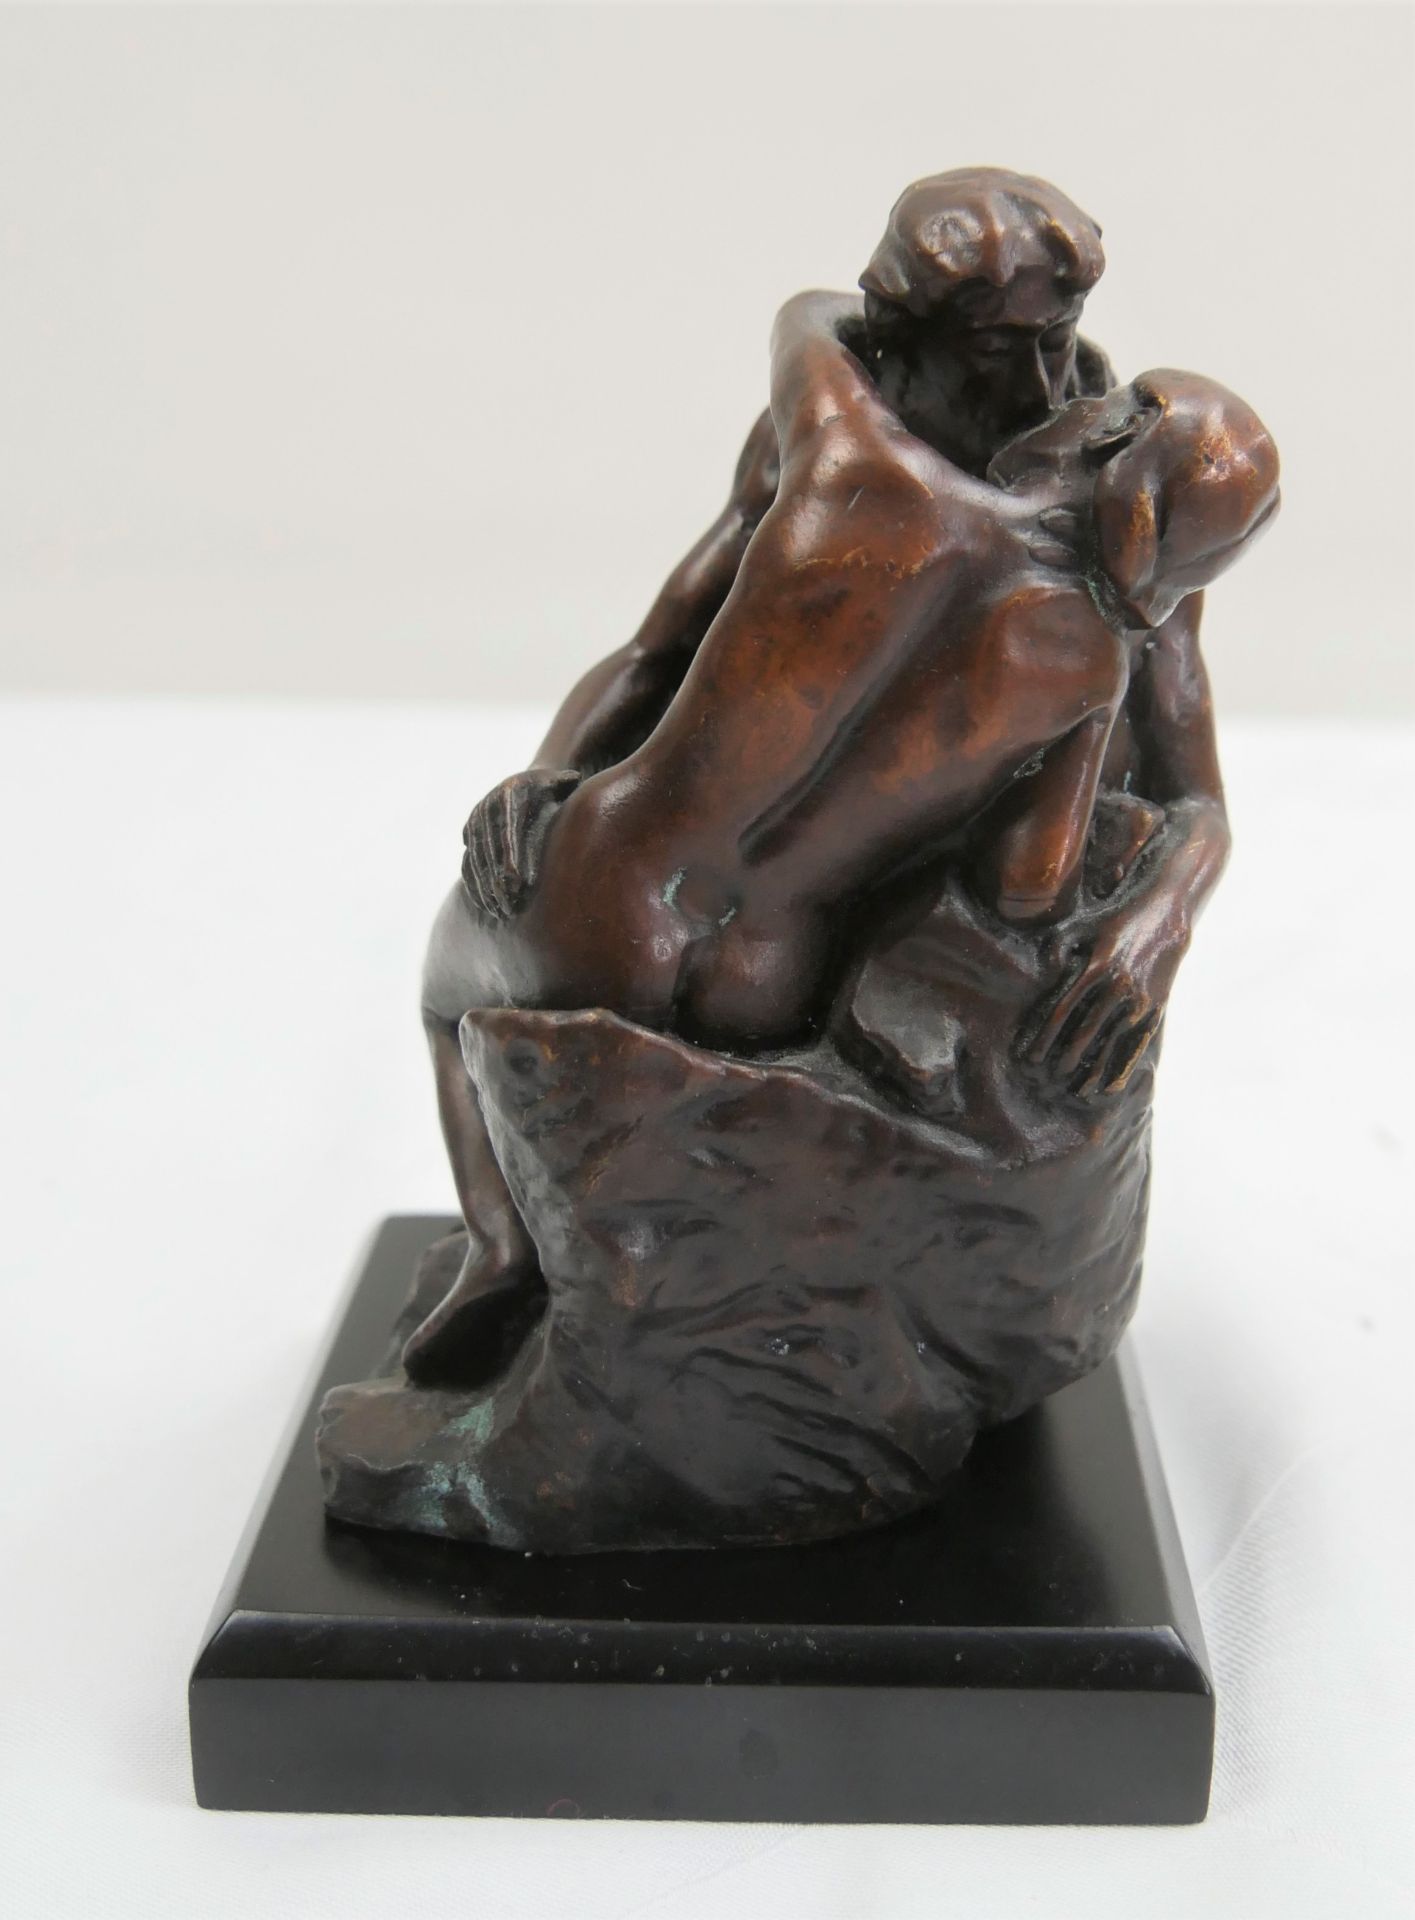 De Agostini Bronze Figur "Der Kuss" nach einem Werk von Rodin. In Original Verpackung. - Image 3 of 6